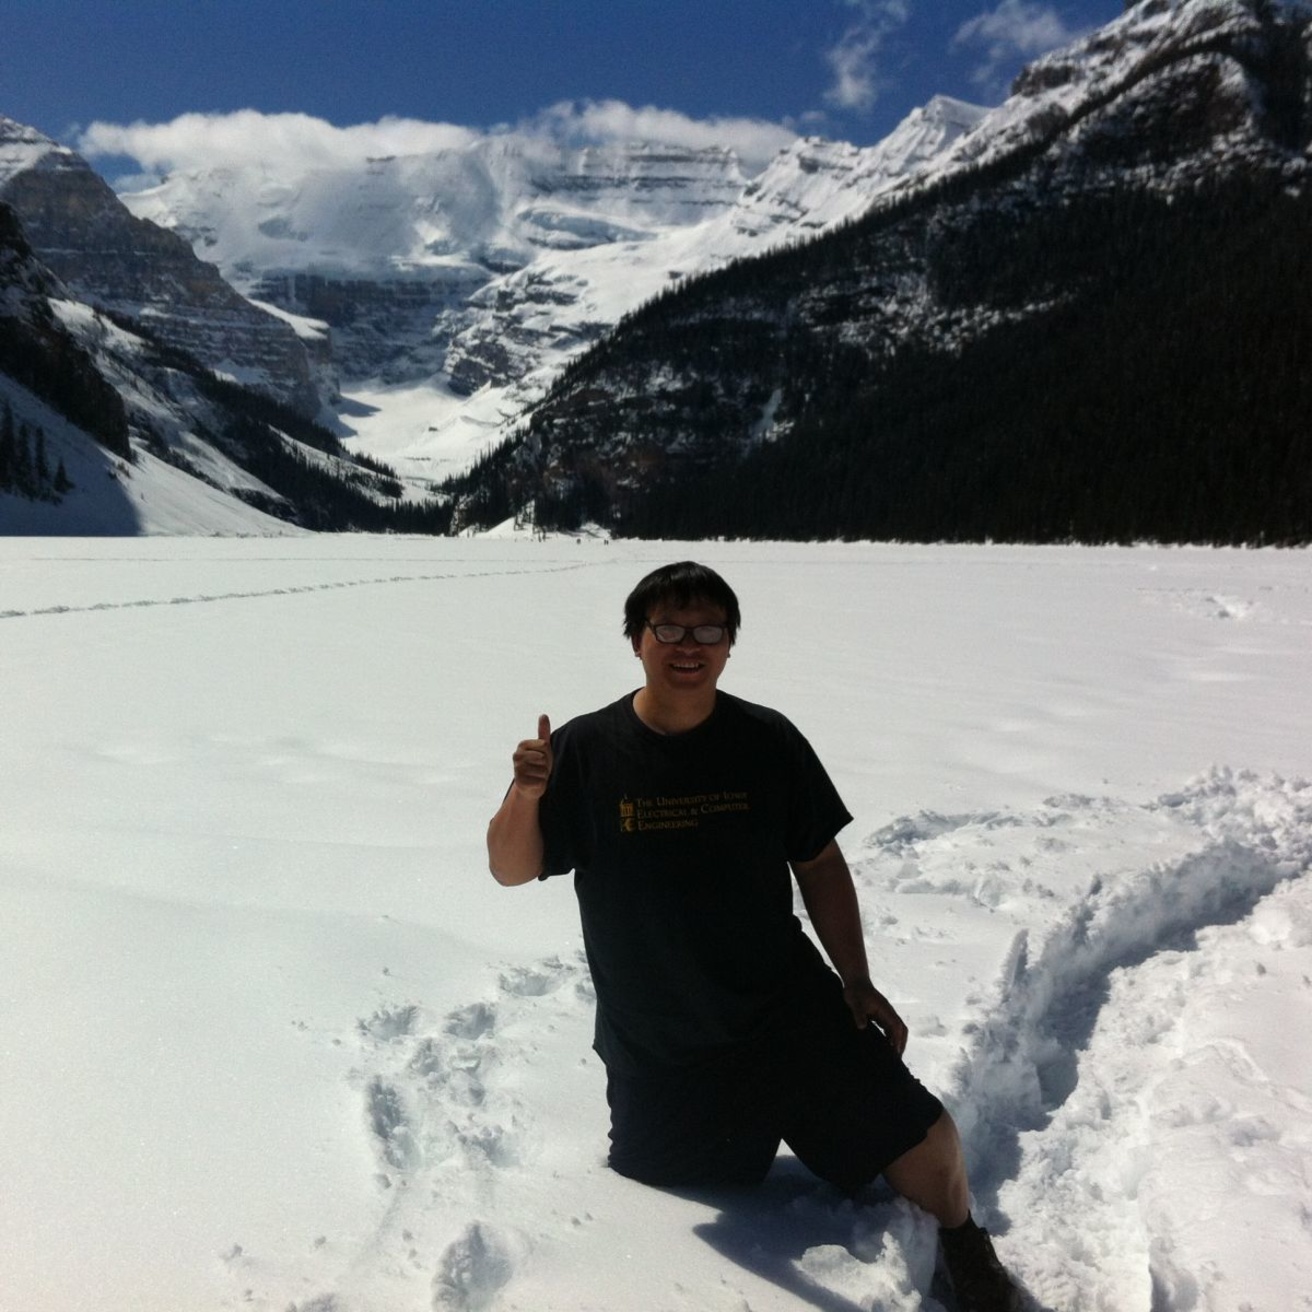 Weiyu Xu in Calgary hiking on top of frozen Lake Louise